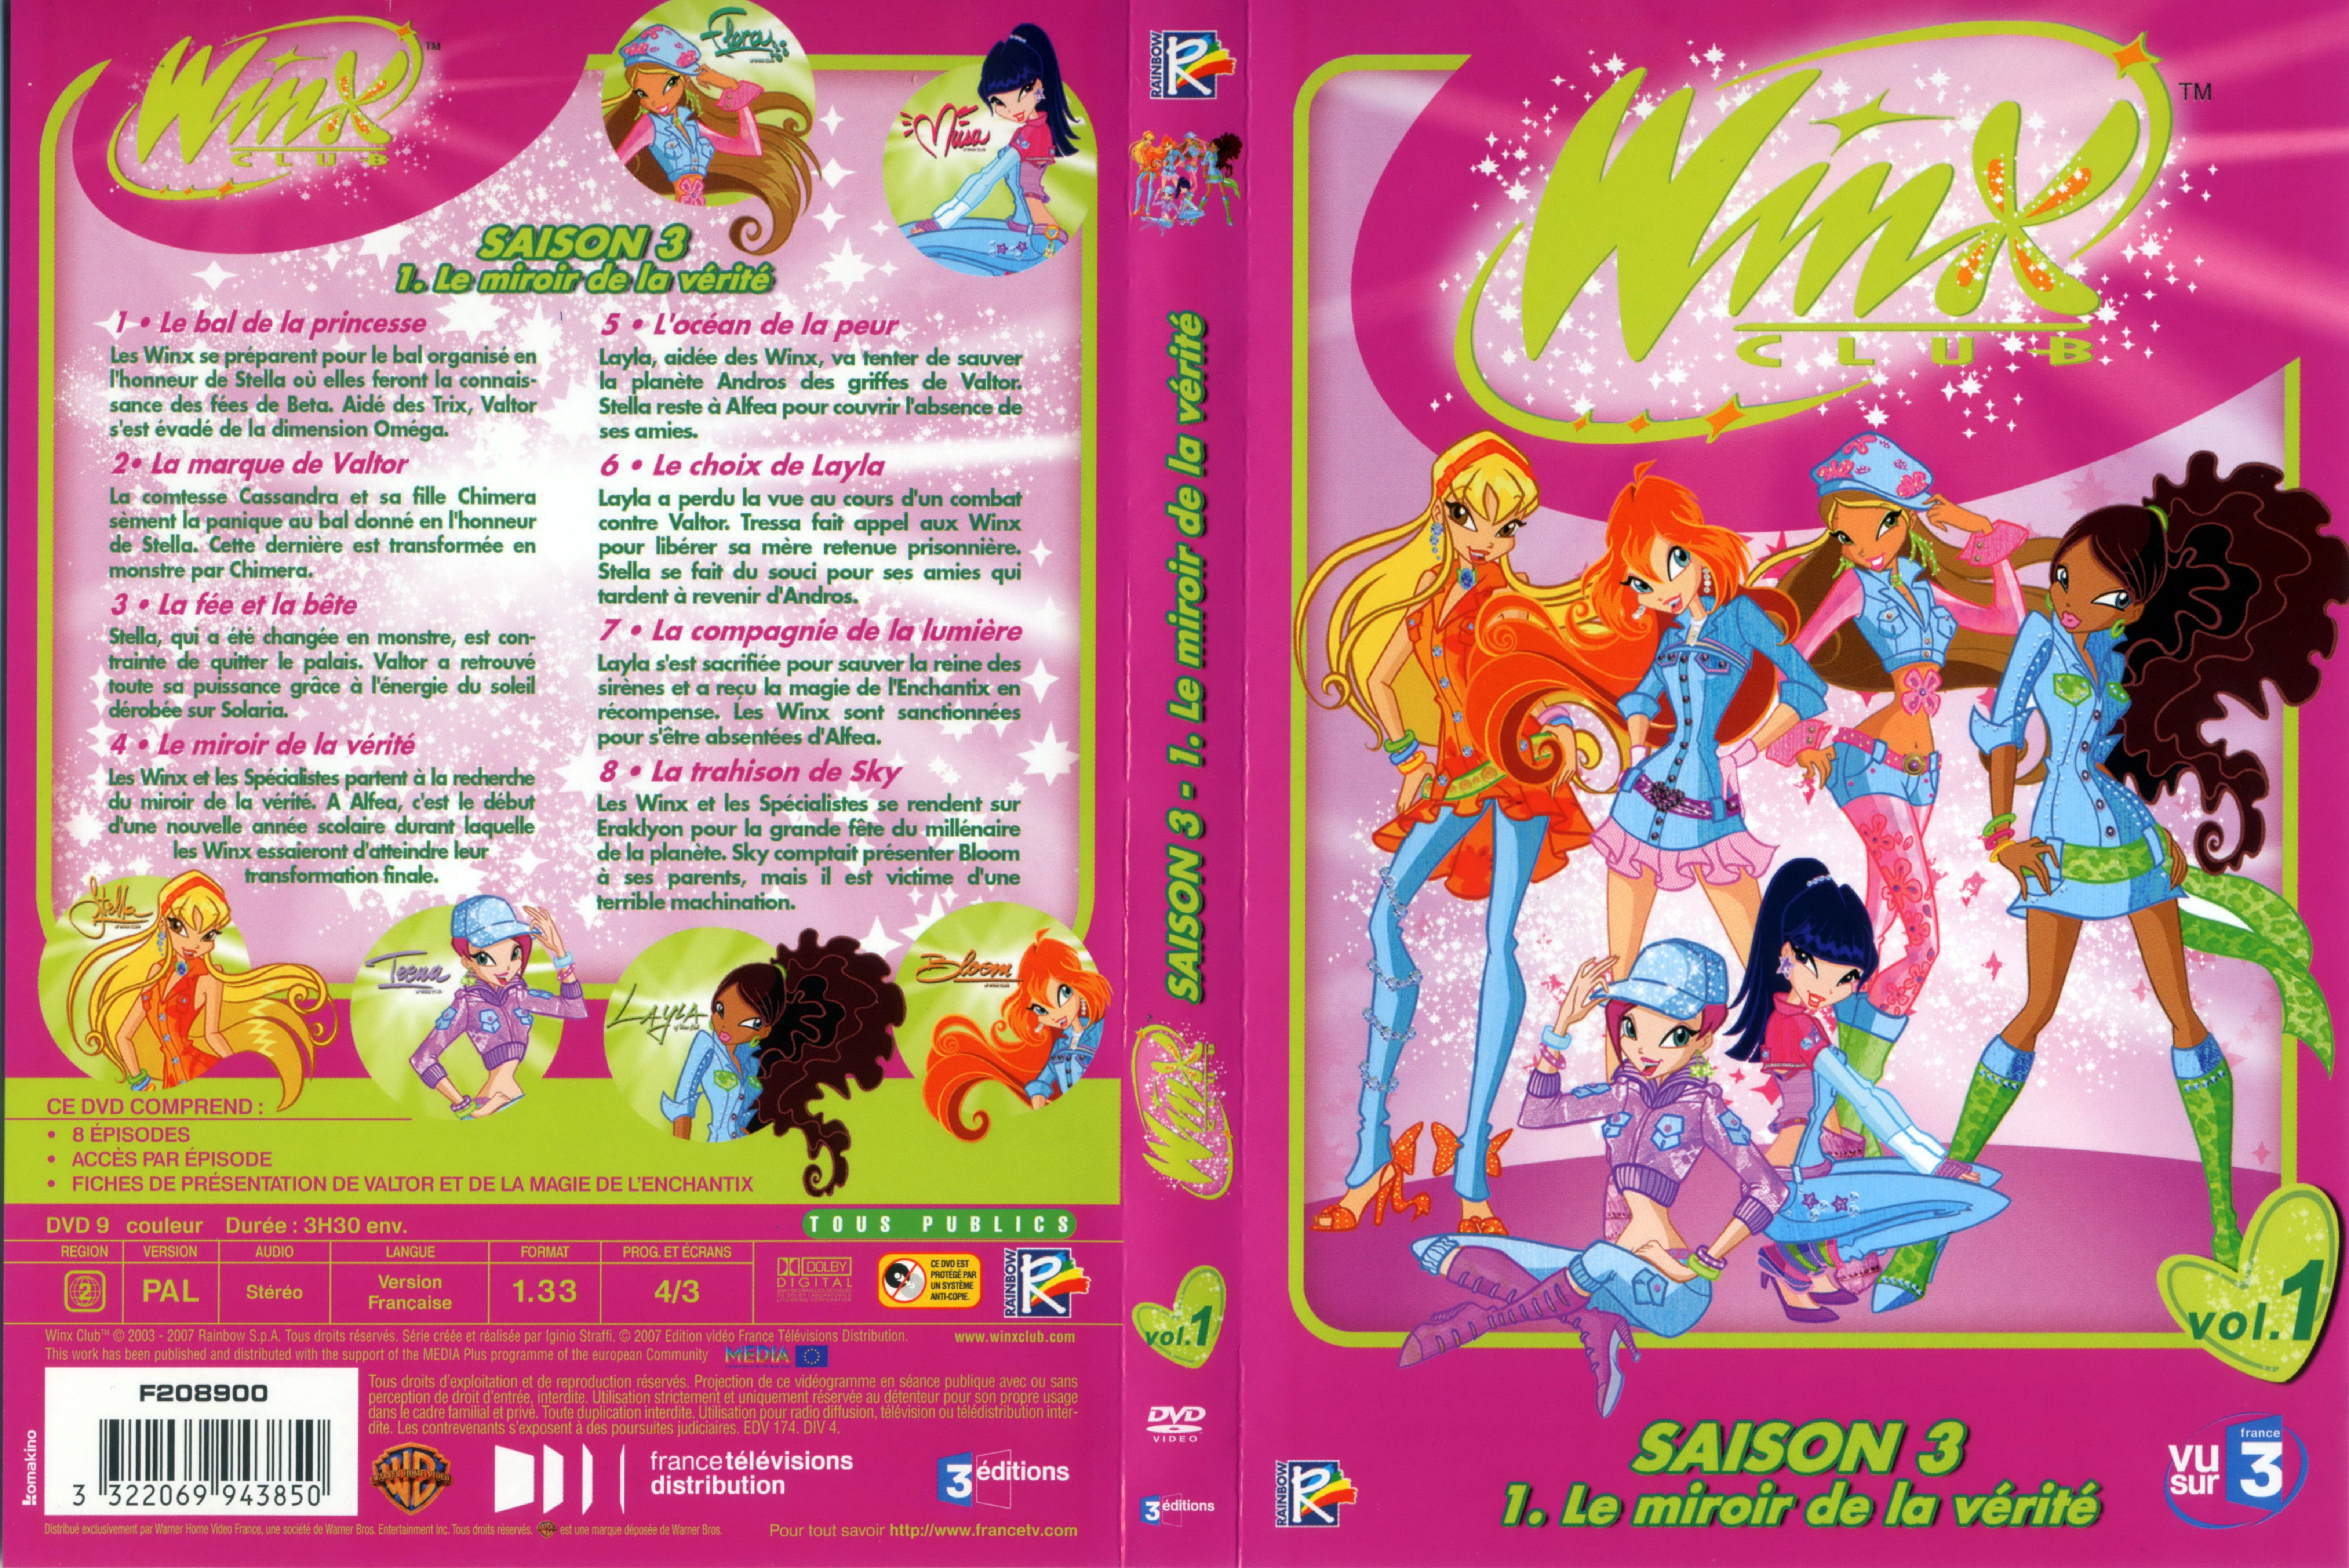 Jaquette DVD Winx club saison 3 vol 1